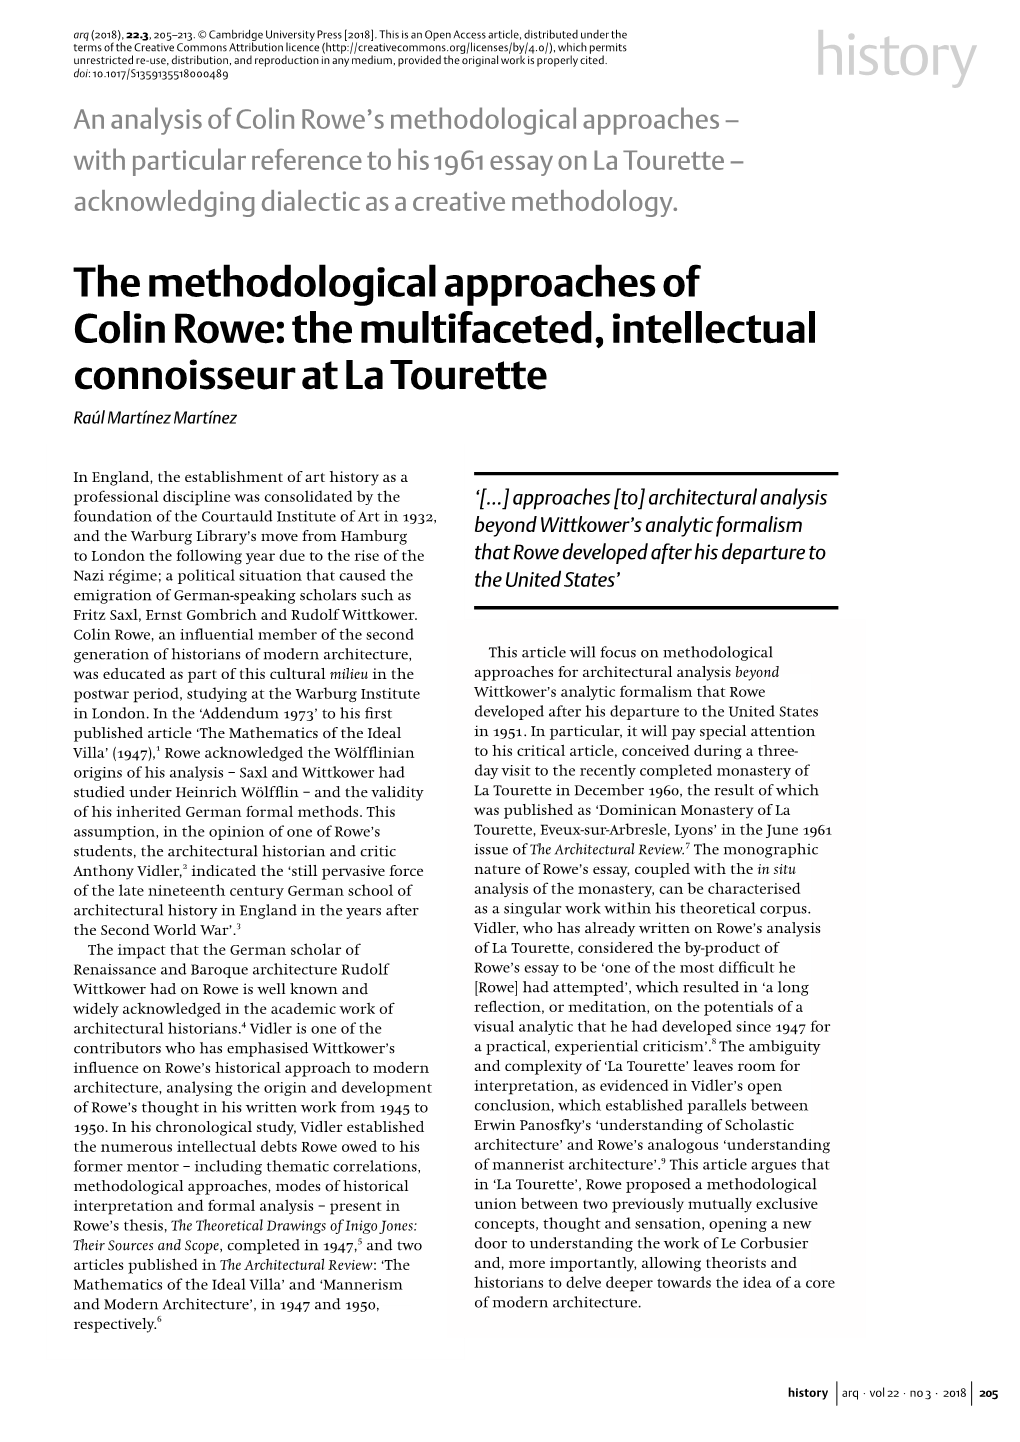 The Methodological Approaches of Colin Rowe: the Multifaceted, Intellectual Connoisseur at La Tourette Raúl Martínez Martínez